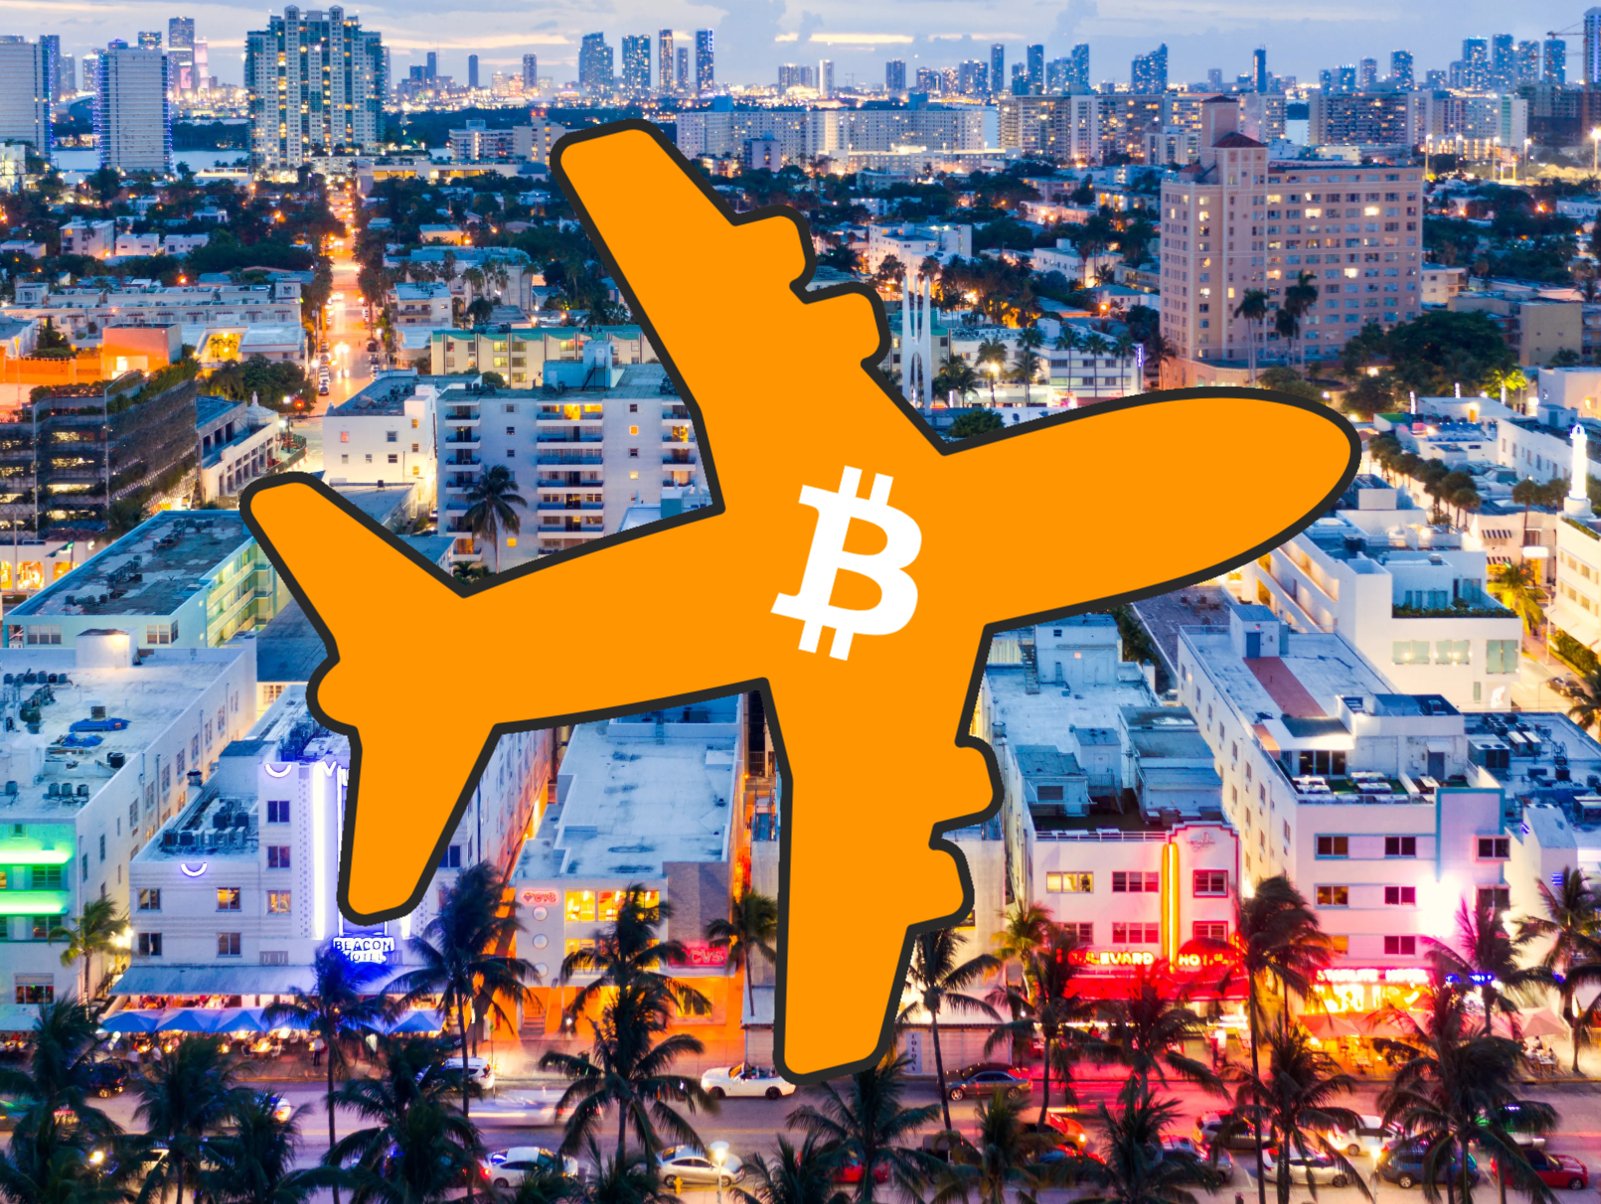 ¿Exagerado? Este es el “módico” precio de la Conferencia Bitcoin 2022 en Miami